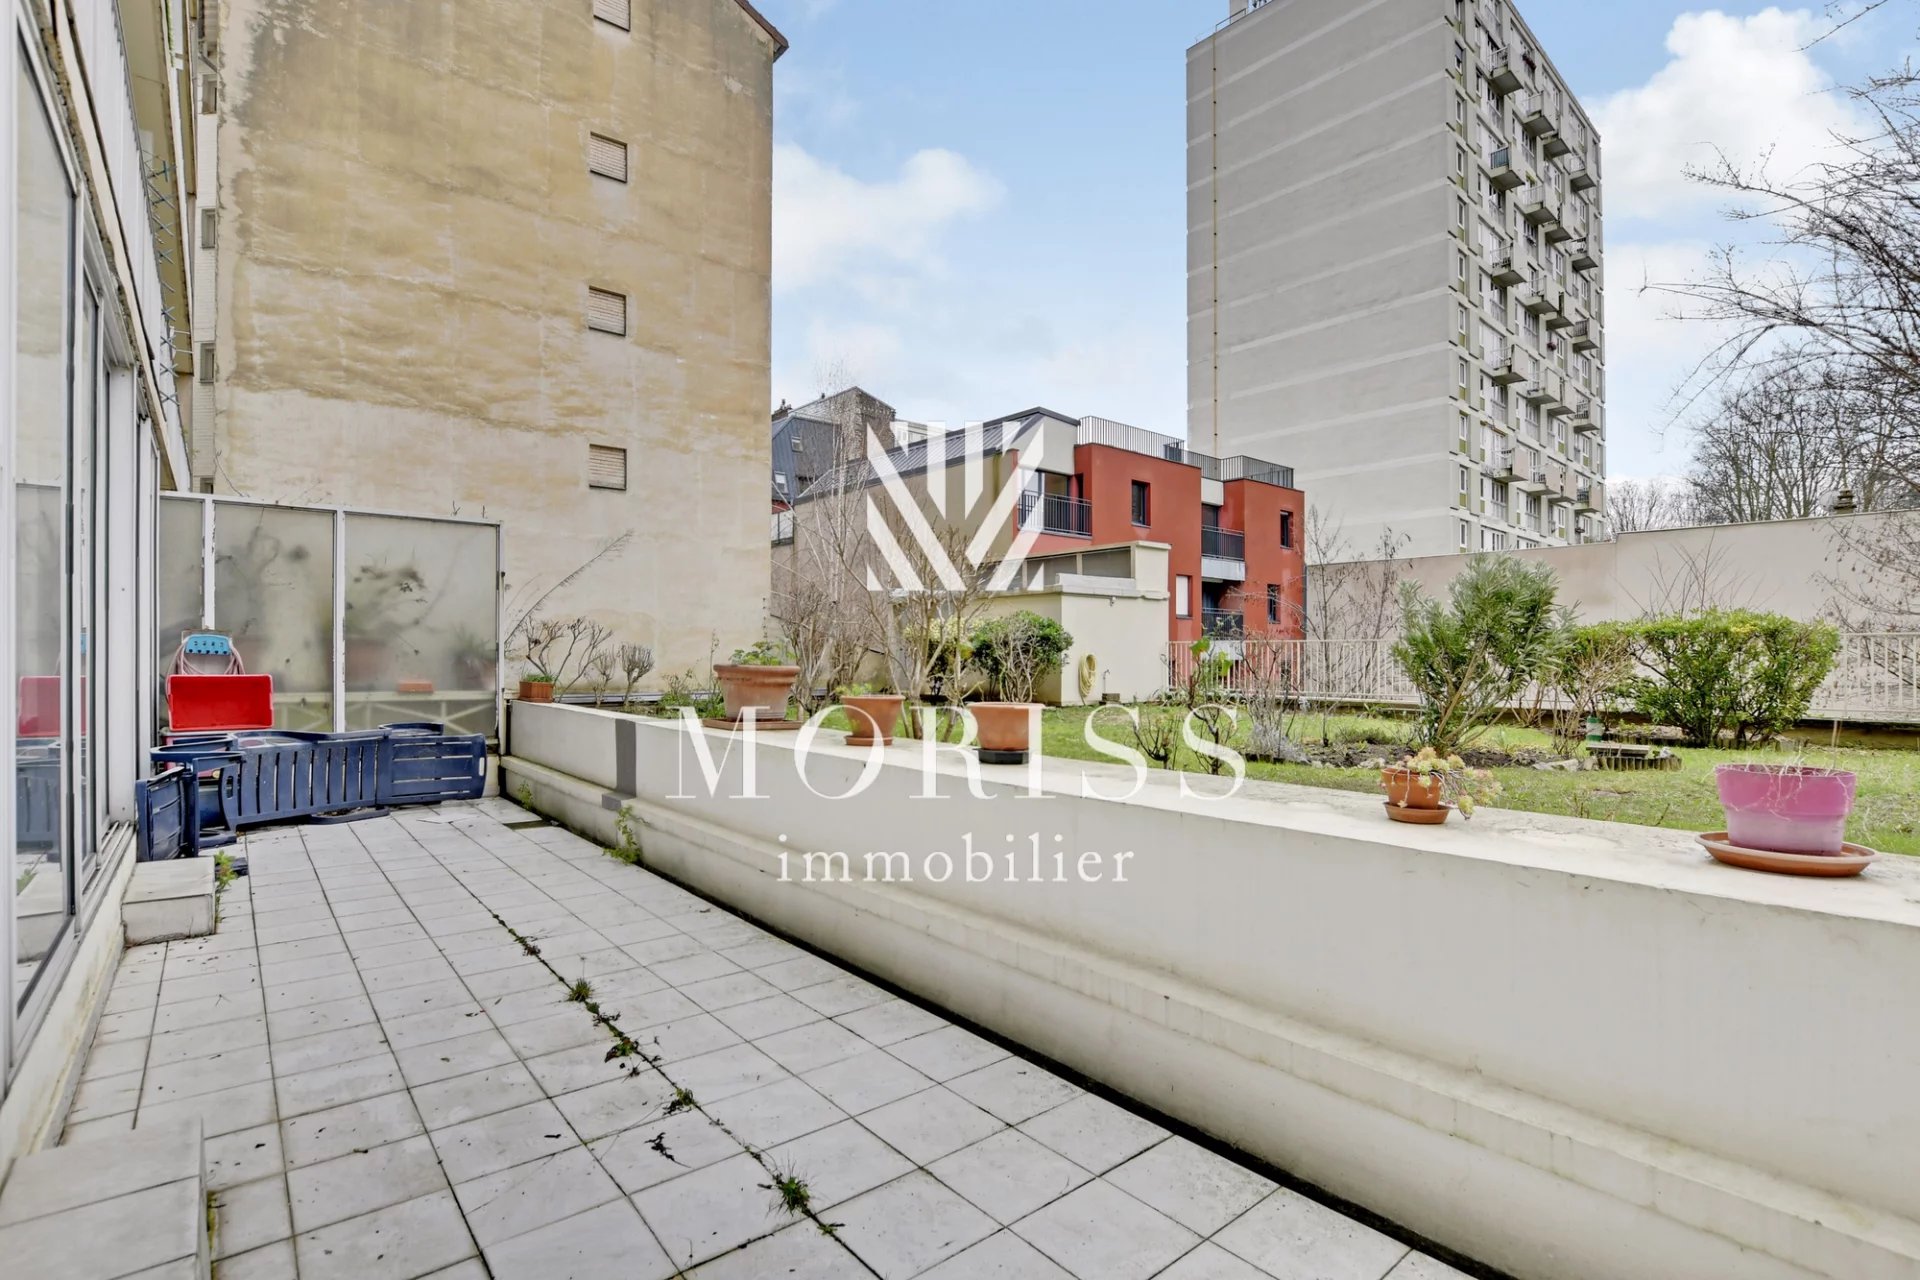 Appartement 2 pièces de 52m2 / grande terrasse à rénover - Image Array